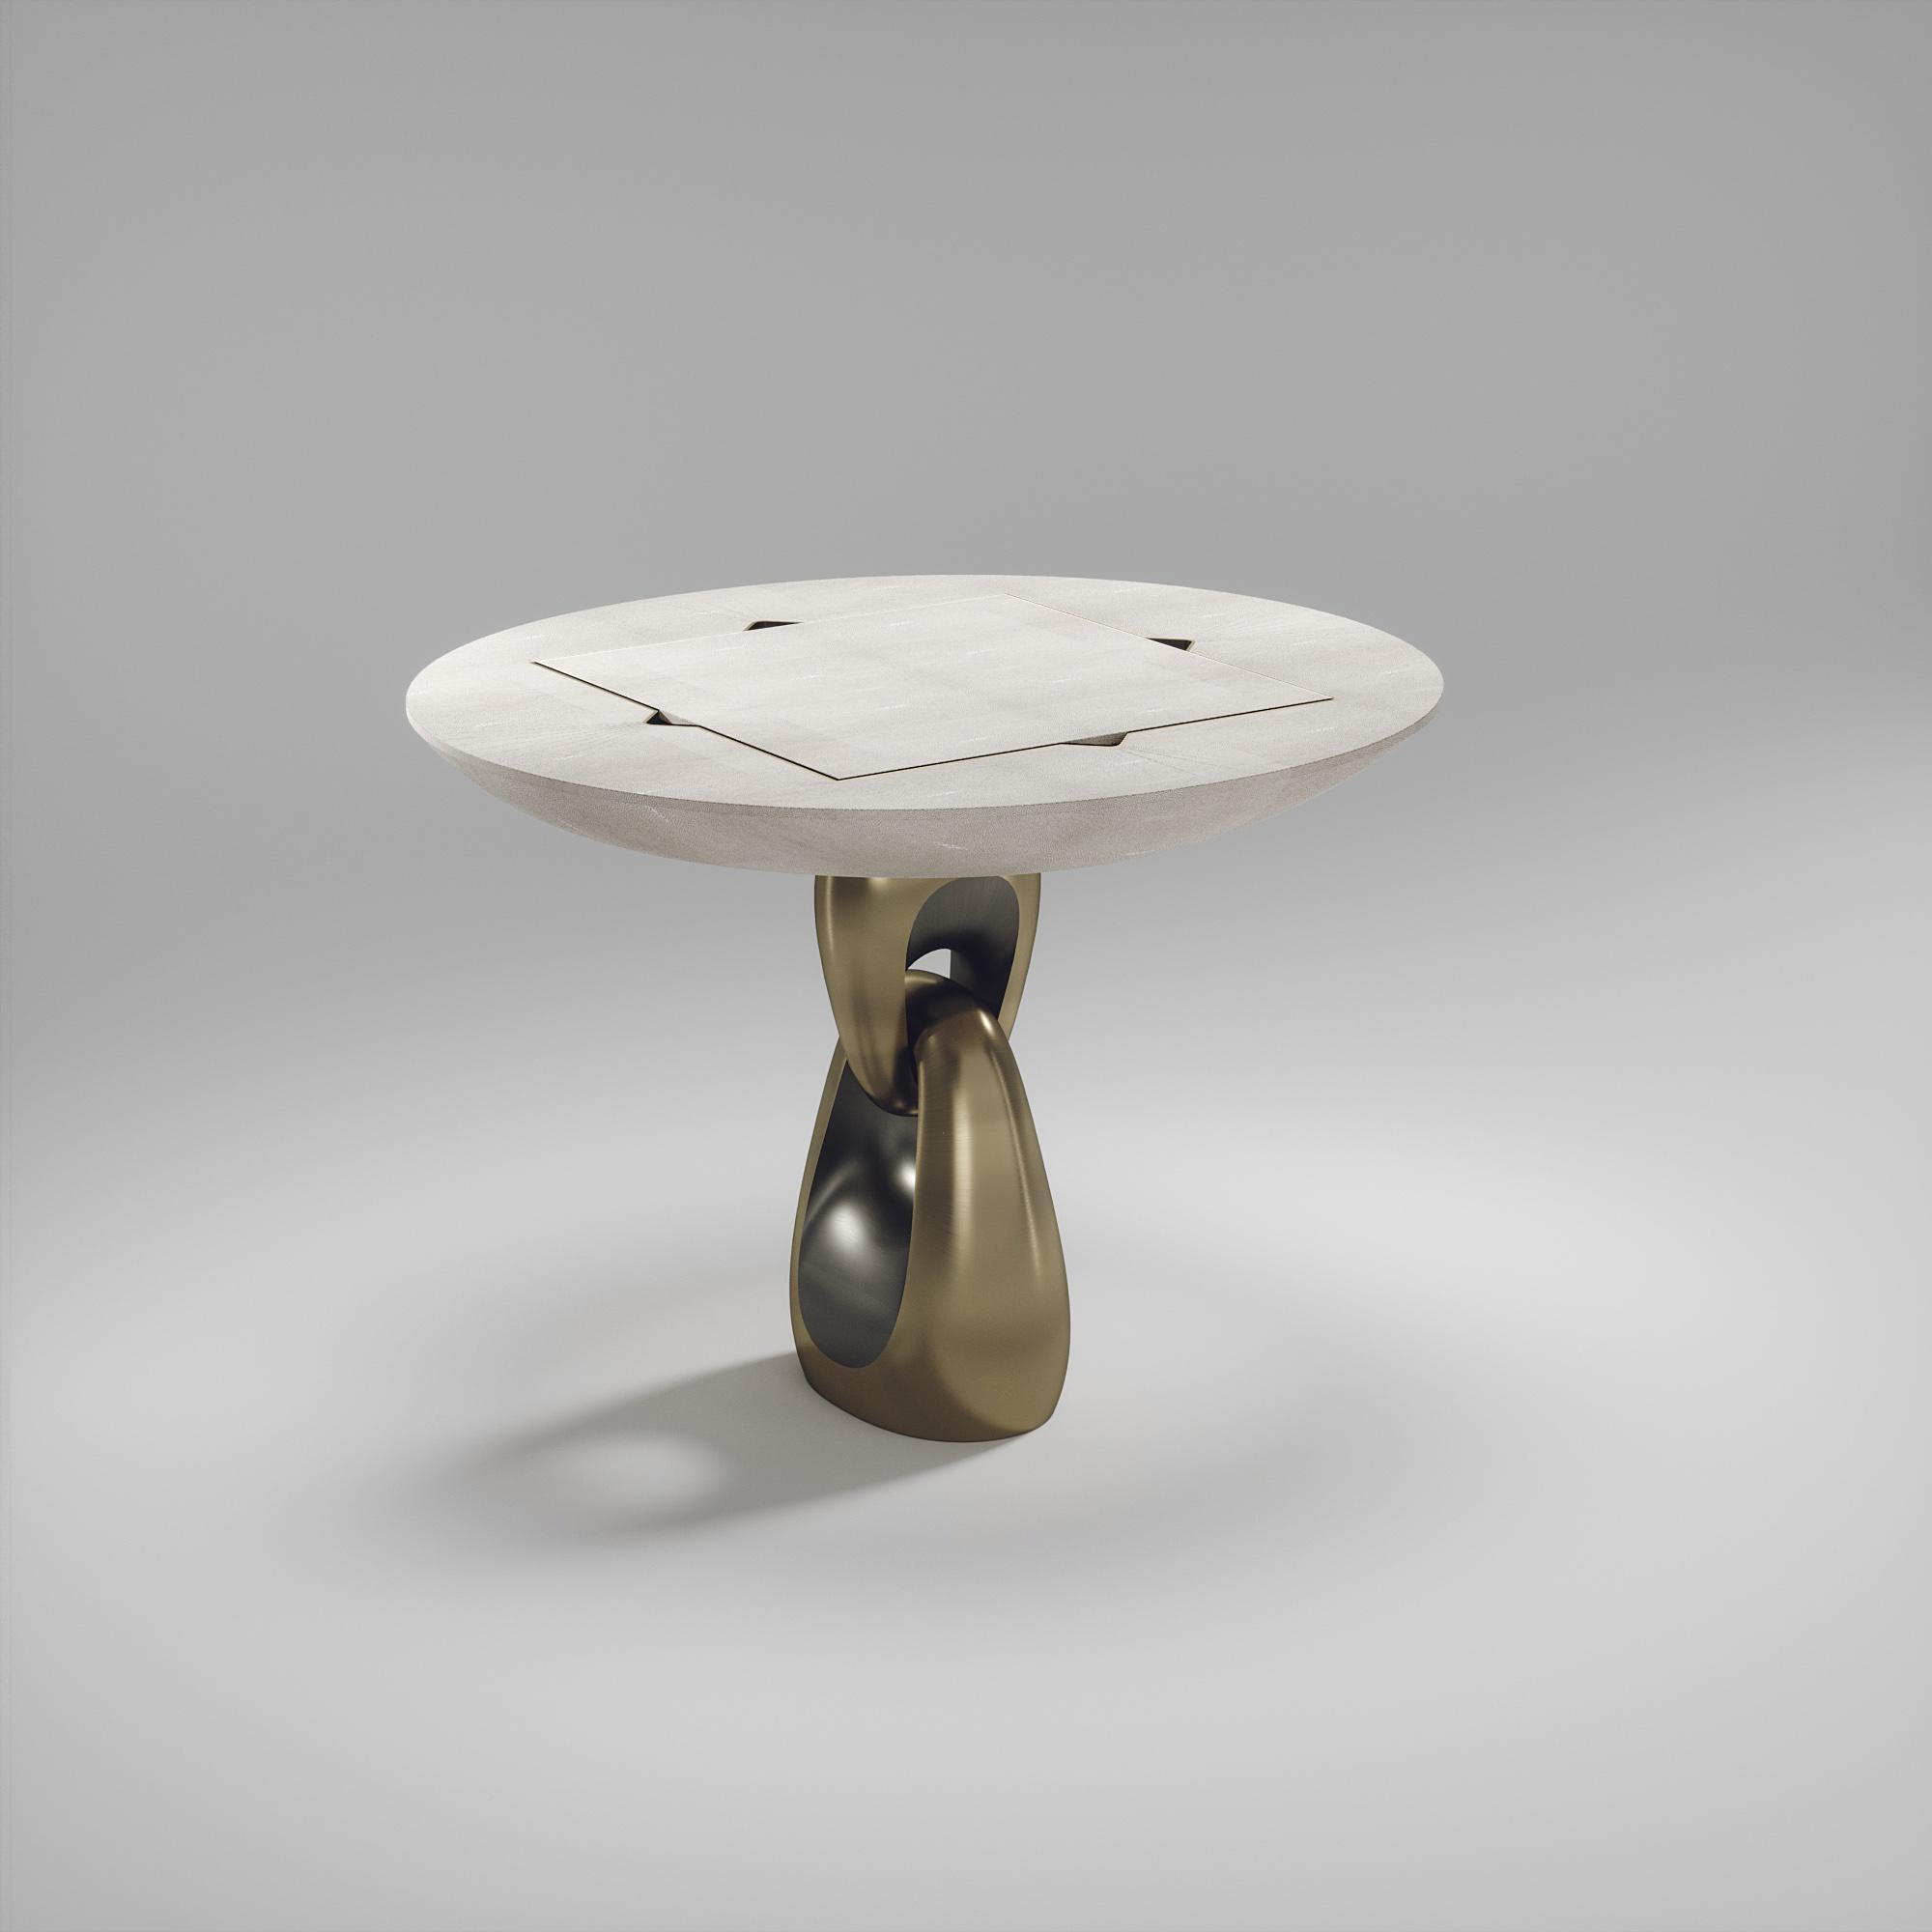 Der 4 in 1 Saturn Spieltisch R&Y Augousti ist ein wahrhaft luxuriöses Schmuckstück für Ihr Zuhause. Die klaren Linien des gesamten Stücks in cremefarbenem Chagrin, akzentuiert durch den skulpturalen und eleganten Sockel aus Messing in Bronze-Patina,